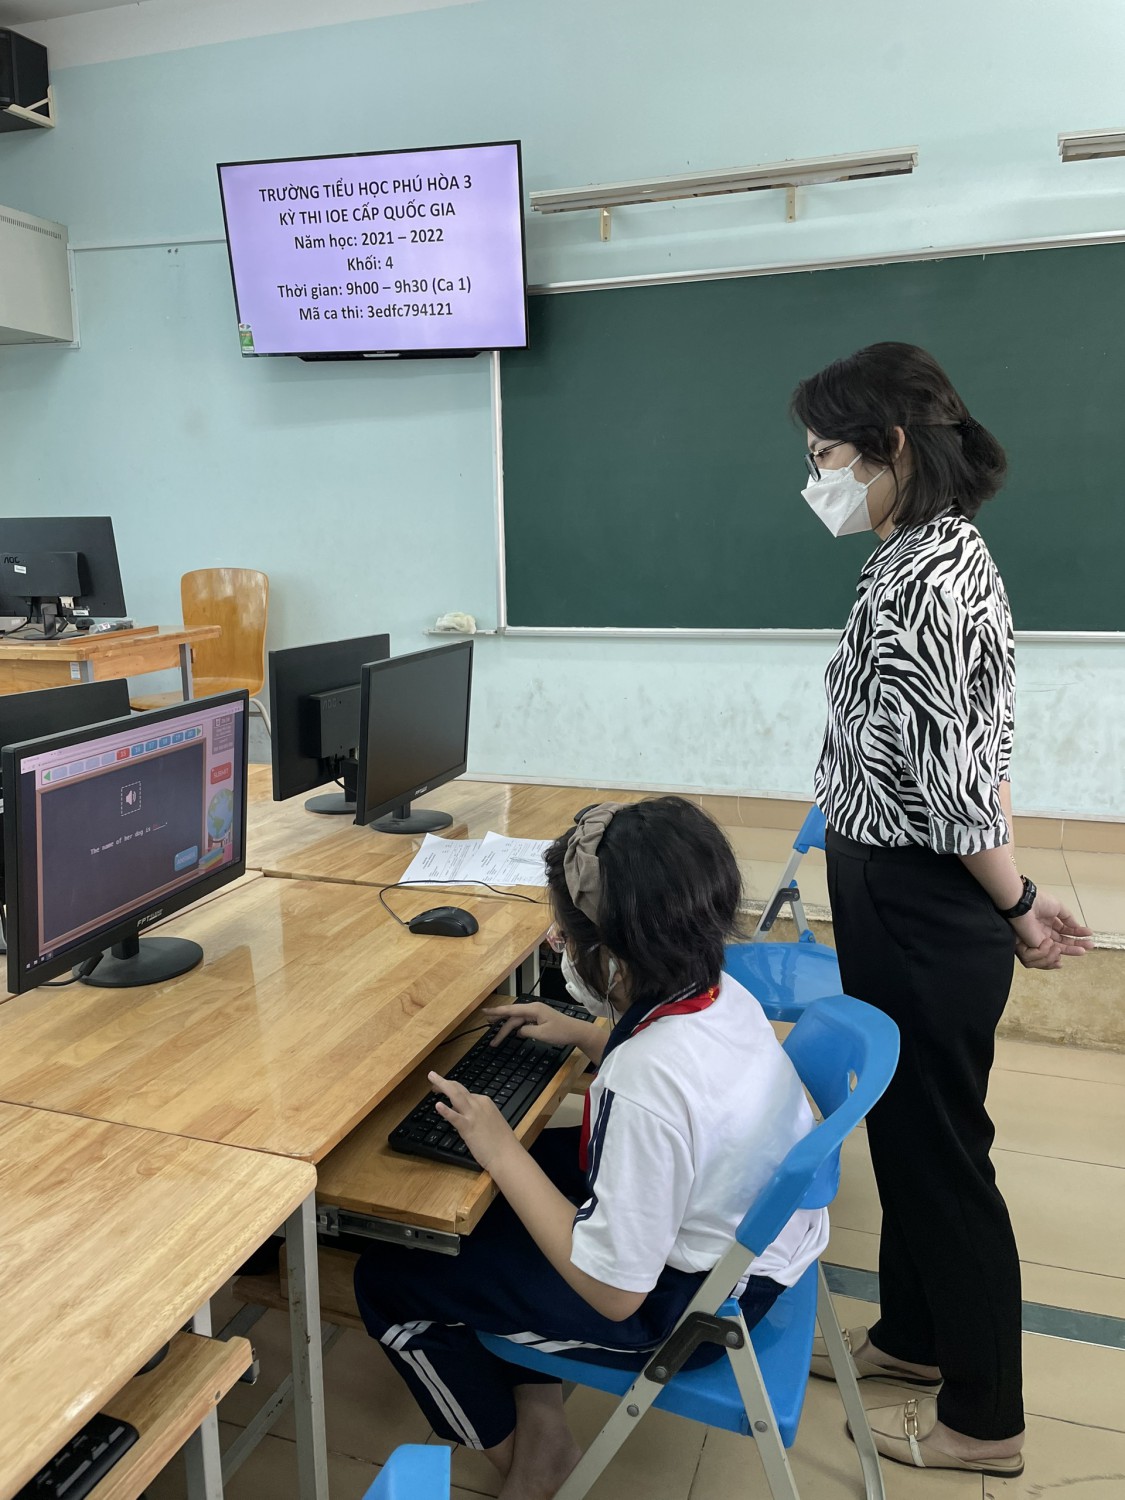 Trường Tiểu học Phú Hòa 3 tham gia tổ chức kỳ thi IOE cấp quốc gia